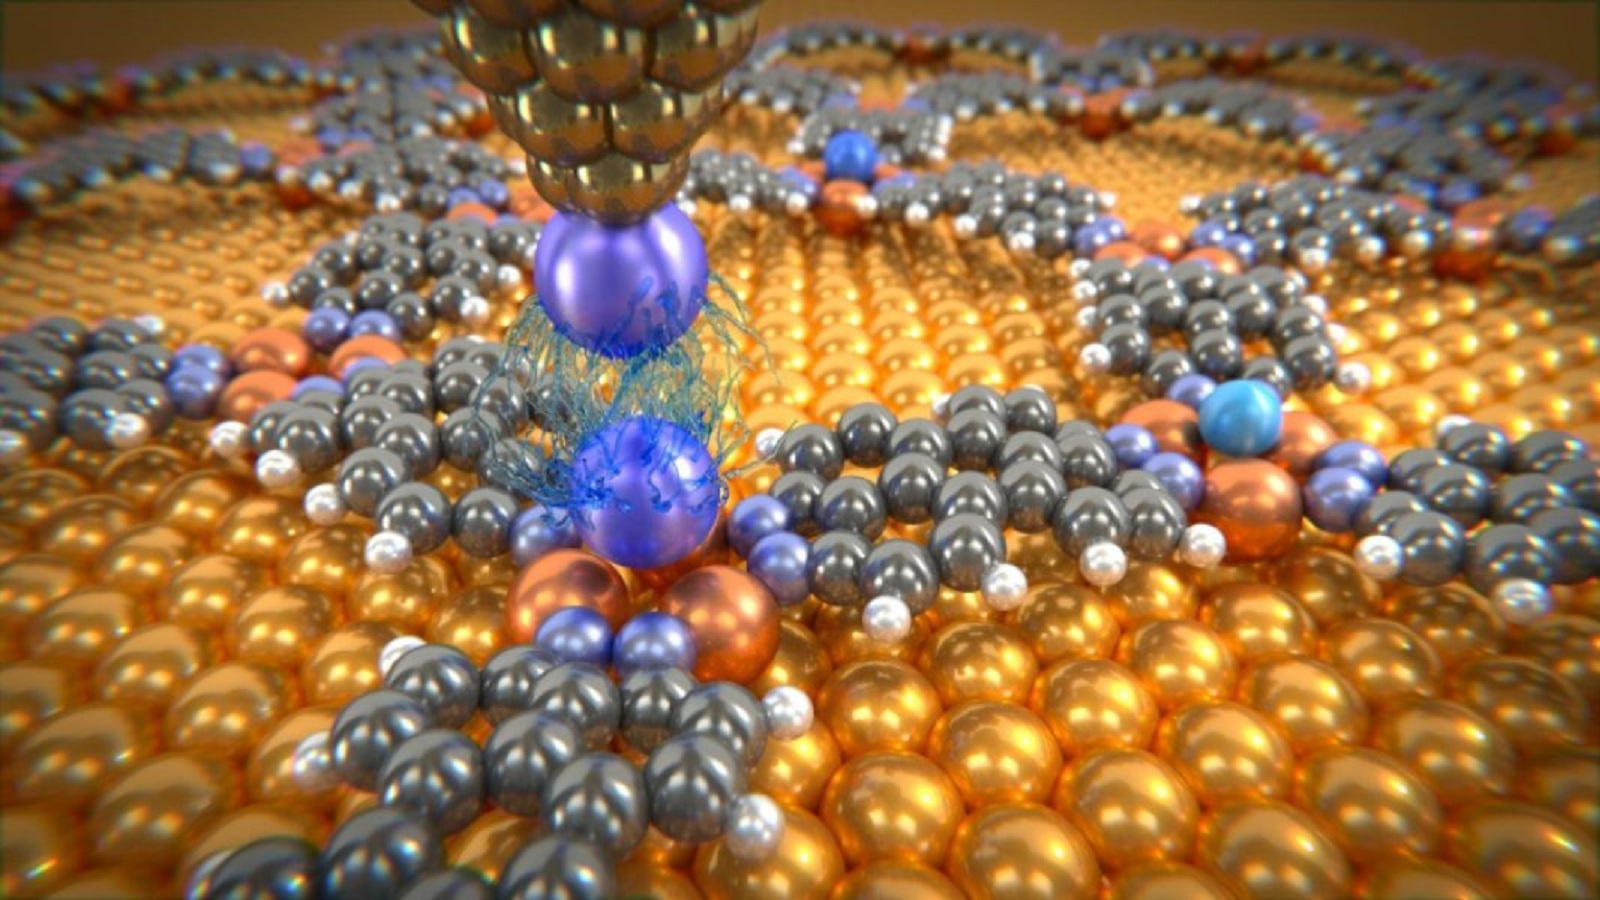 Átomos de gas noble depositados en una red molecular, analizados con la punta de un microscopio, a la que se ha añadido un átomo de xenón. Las mediciones han proporcionado información sobre las débiles fuerzas de van der Waals entre estos átomos individuales. Fuente: Departamento de física de la Universidad de Basilea.